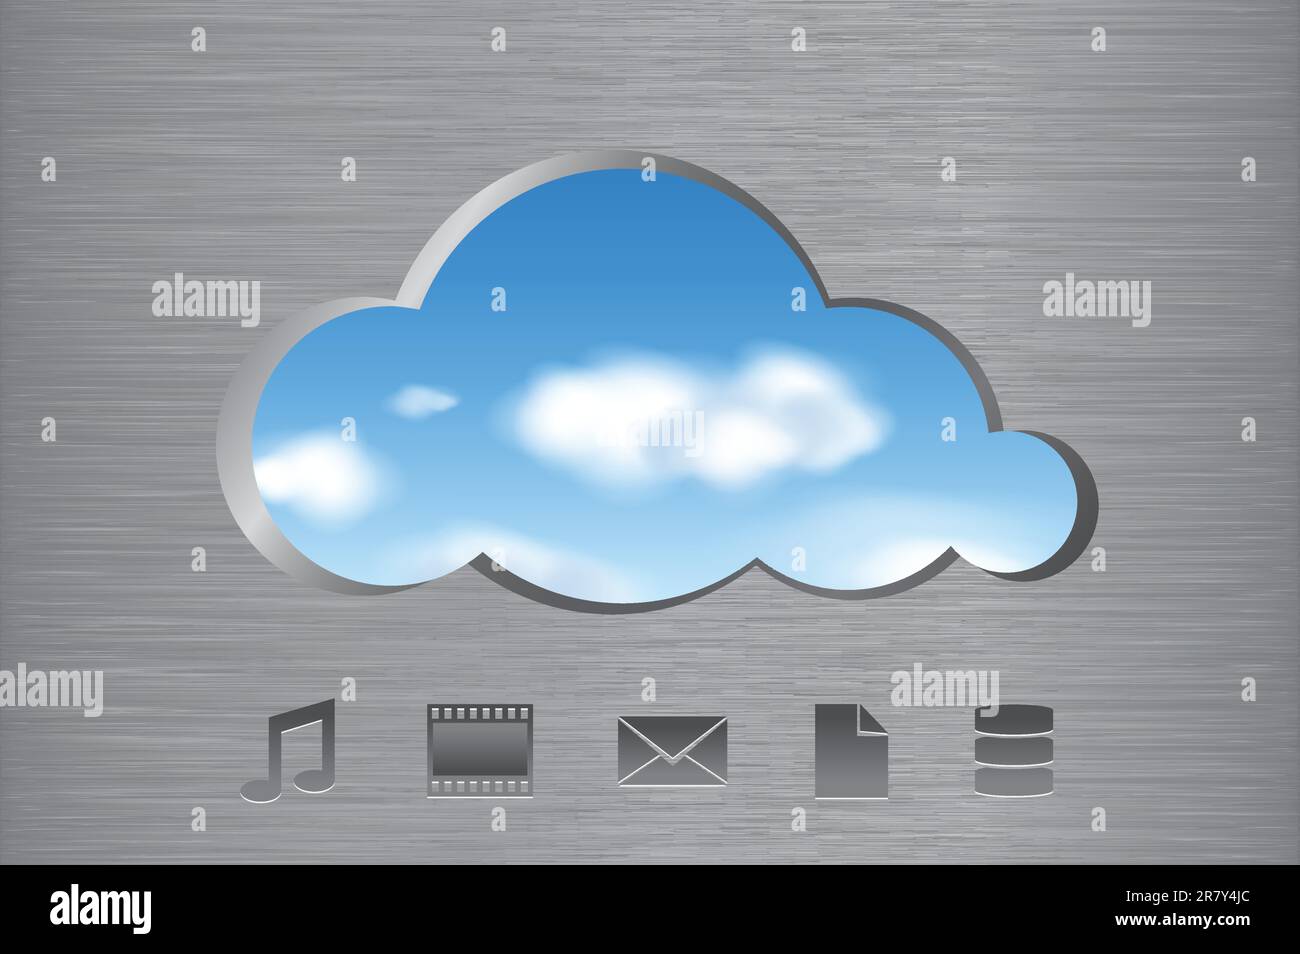 Wolkenform aus gebürsteter Metallwand mit Blick auf die Wolken am Himmel und Symbole. Abstraktes Cloud-Computing-Konzept. Vektordarstellung. Stock Vektor